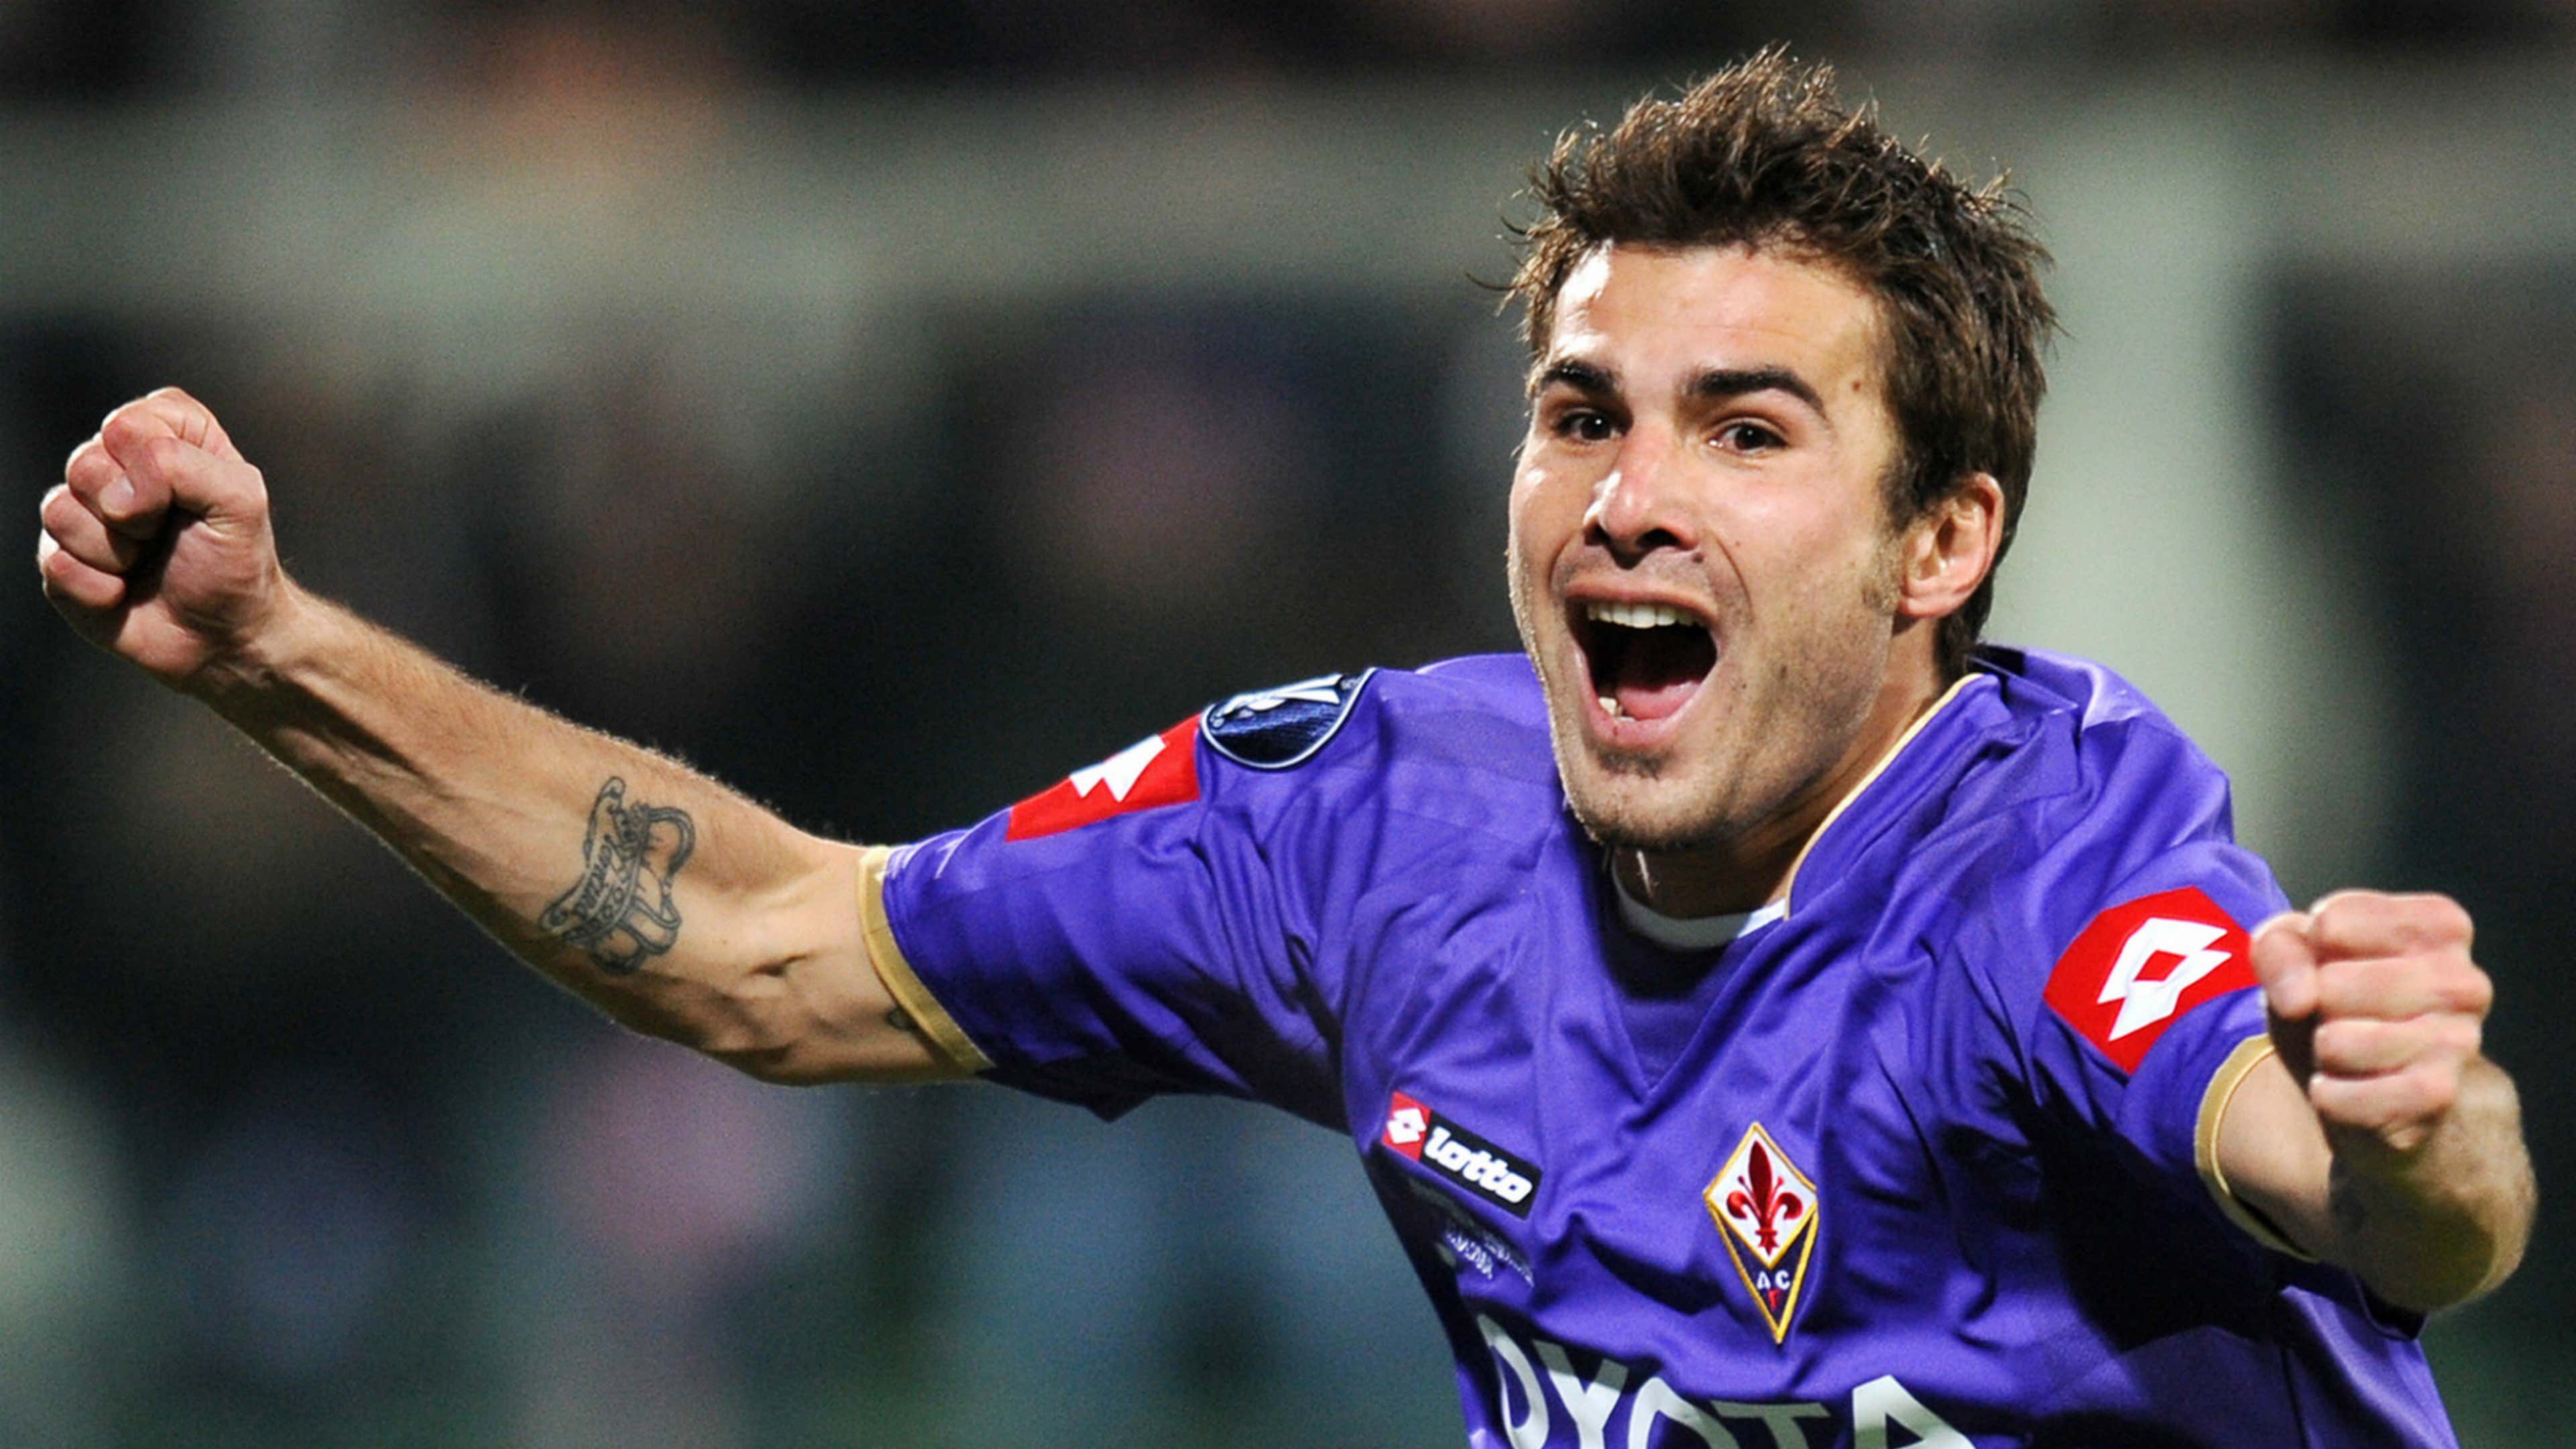 Mutu punta la Serie A: "Sogno di allenare la Fiorentina" | Goal.com Italia